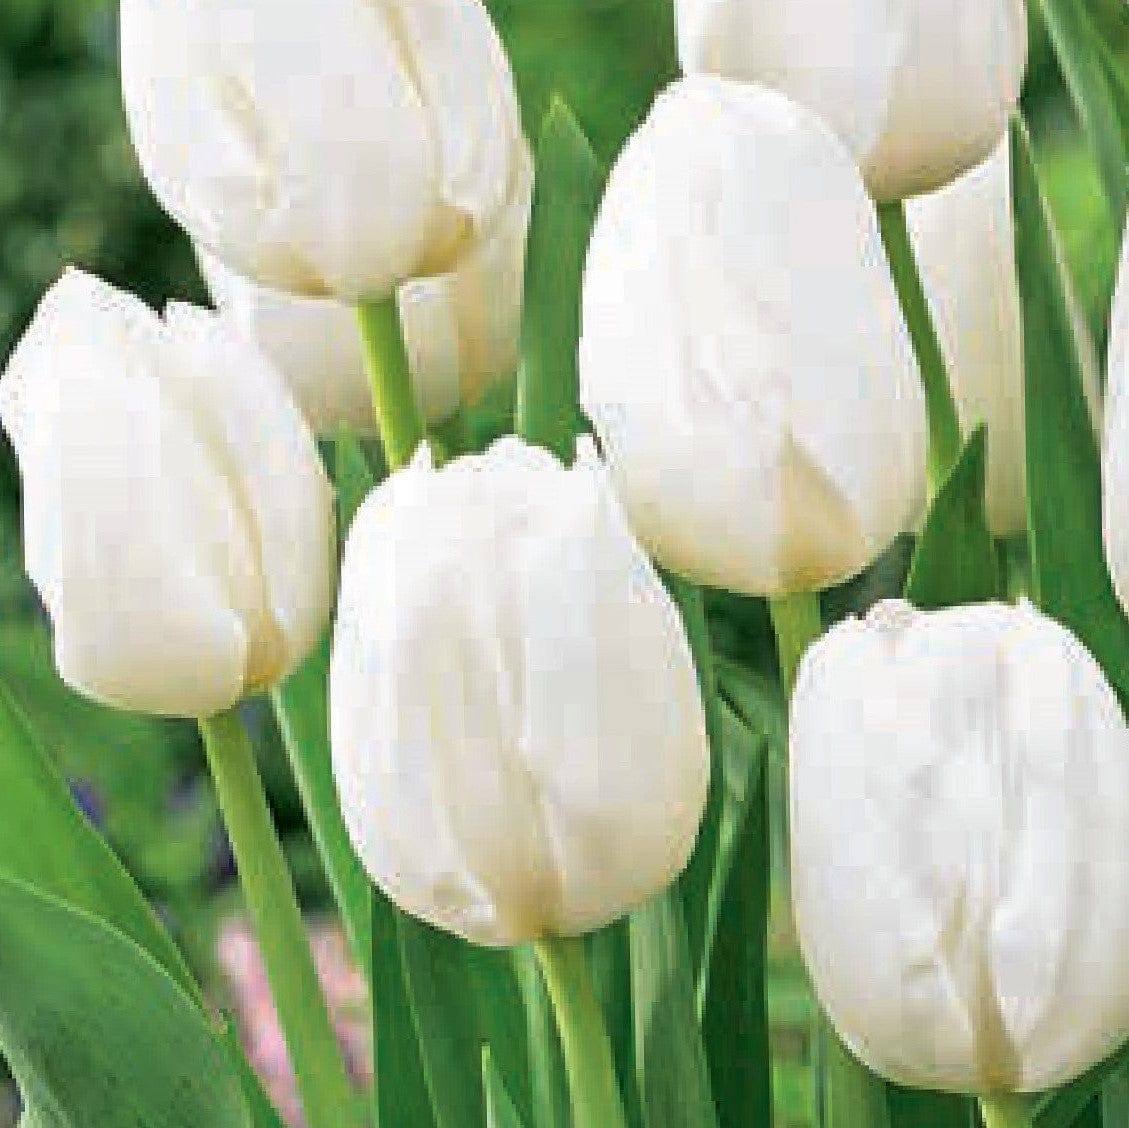 Tulip - Landscape White, BONUS 20 Pack